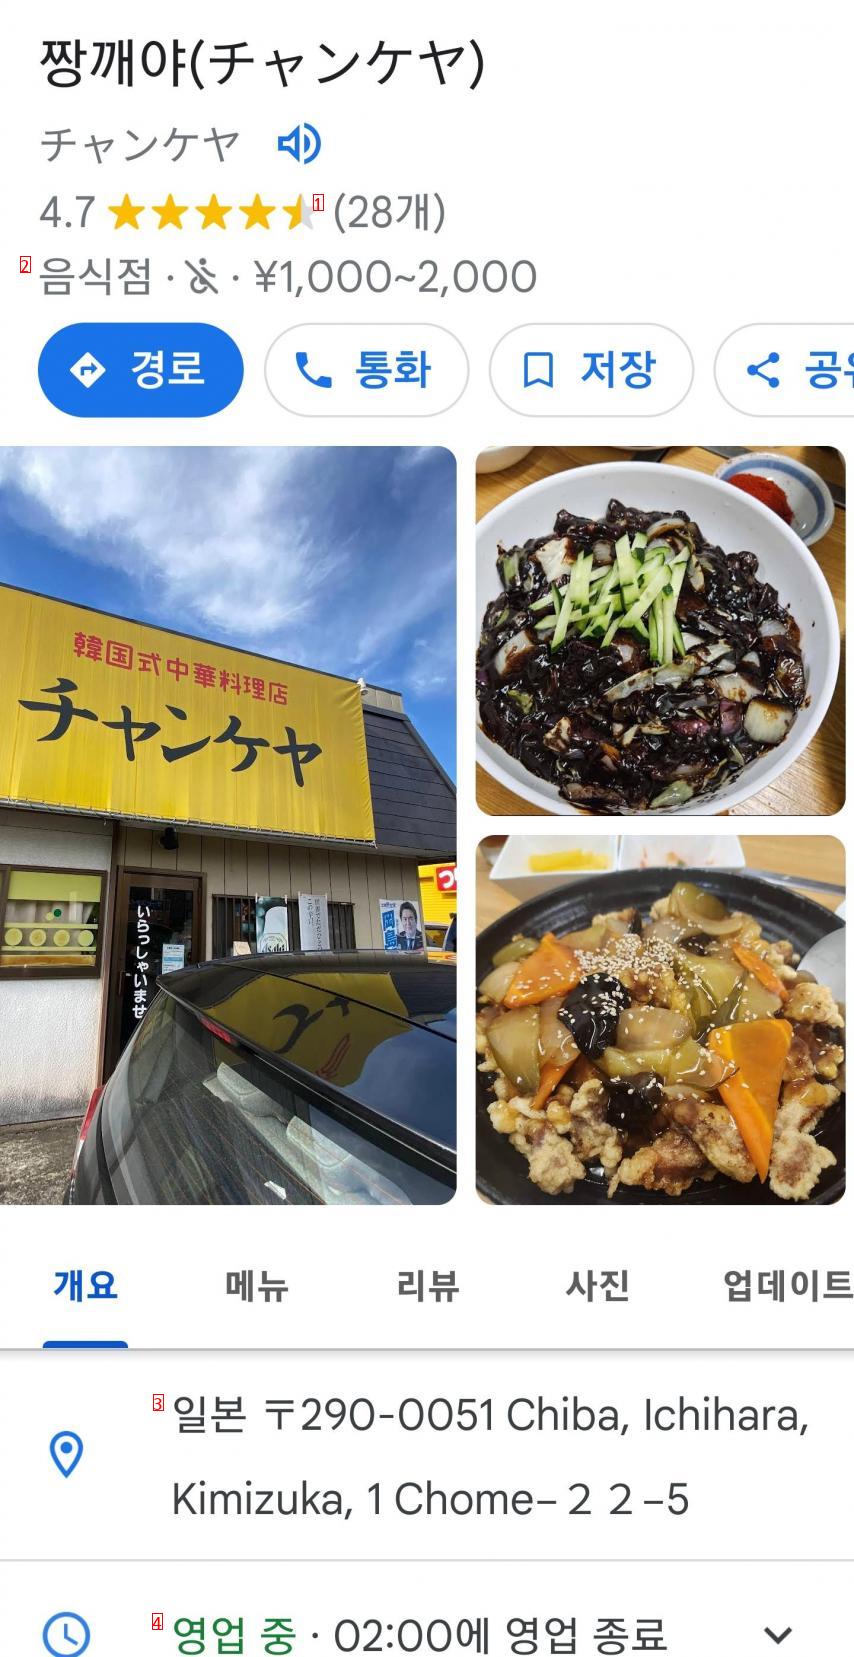 일본에 있는 한국식 중국집